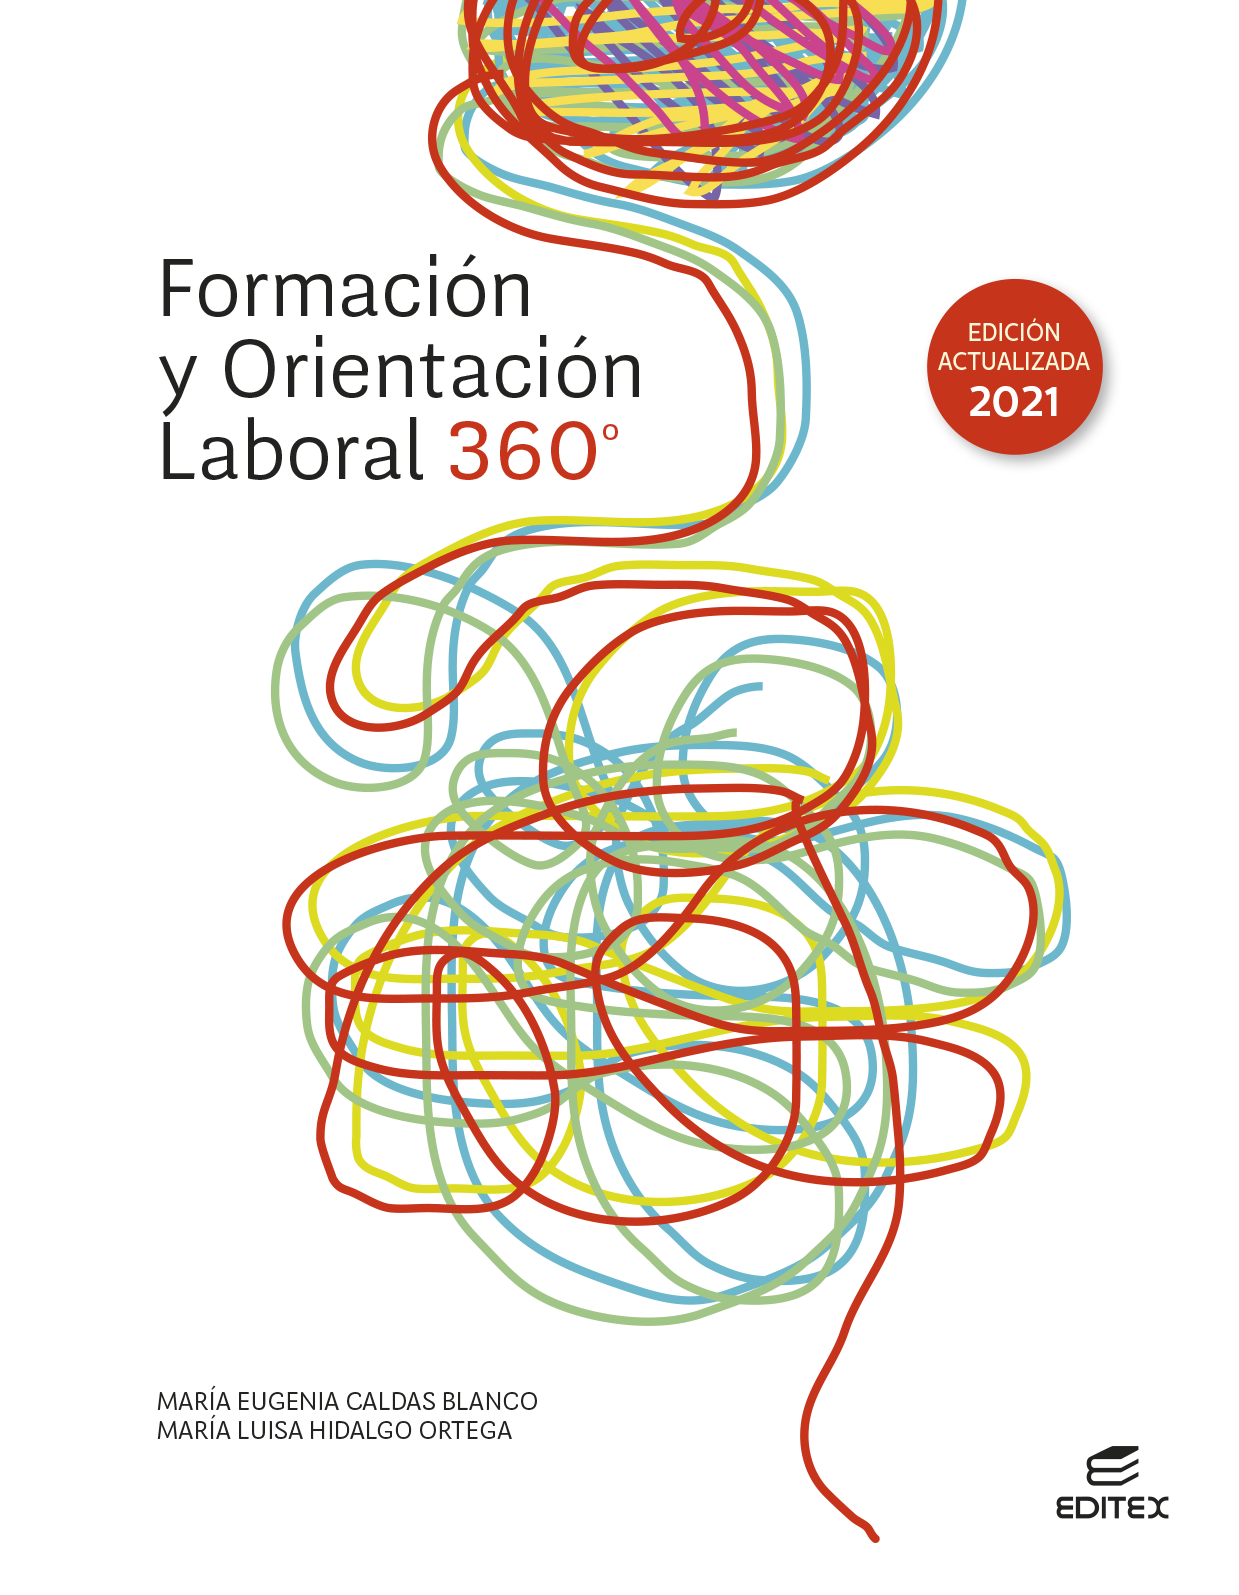 Formación y orientación laboral 360° (Edición actualizada 2021)